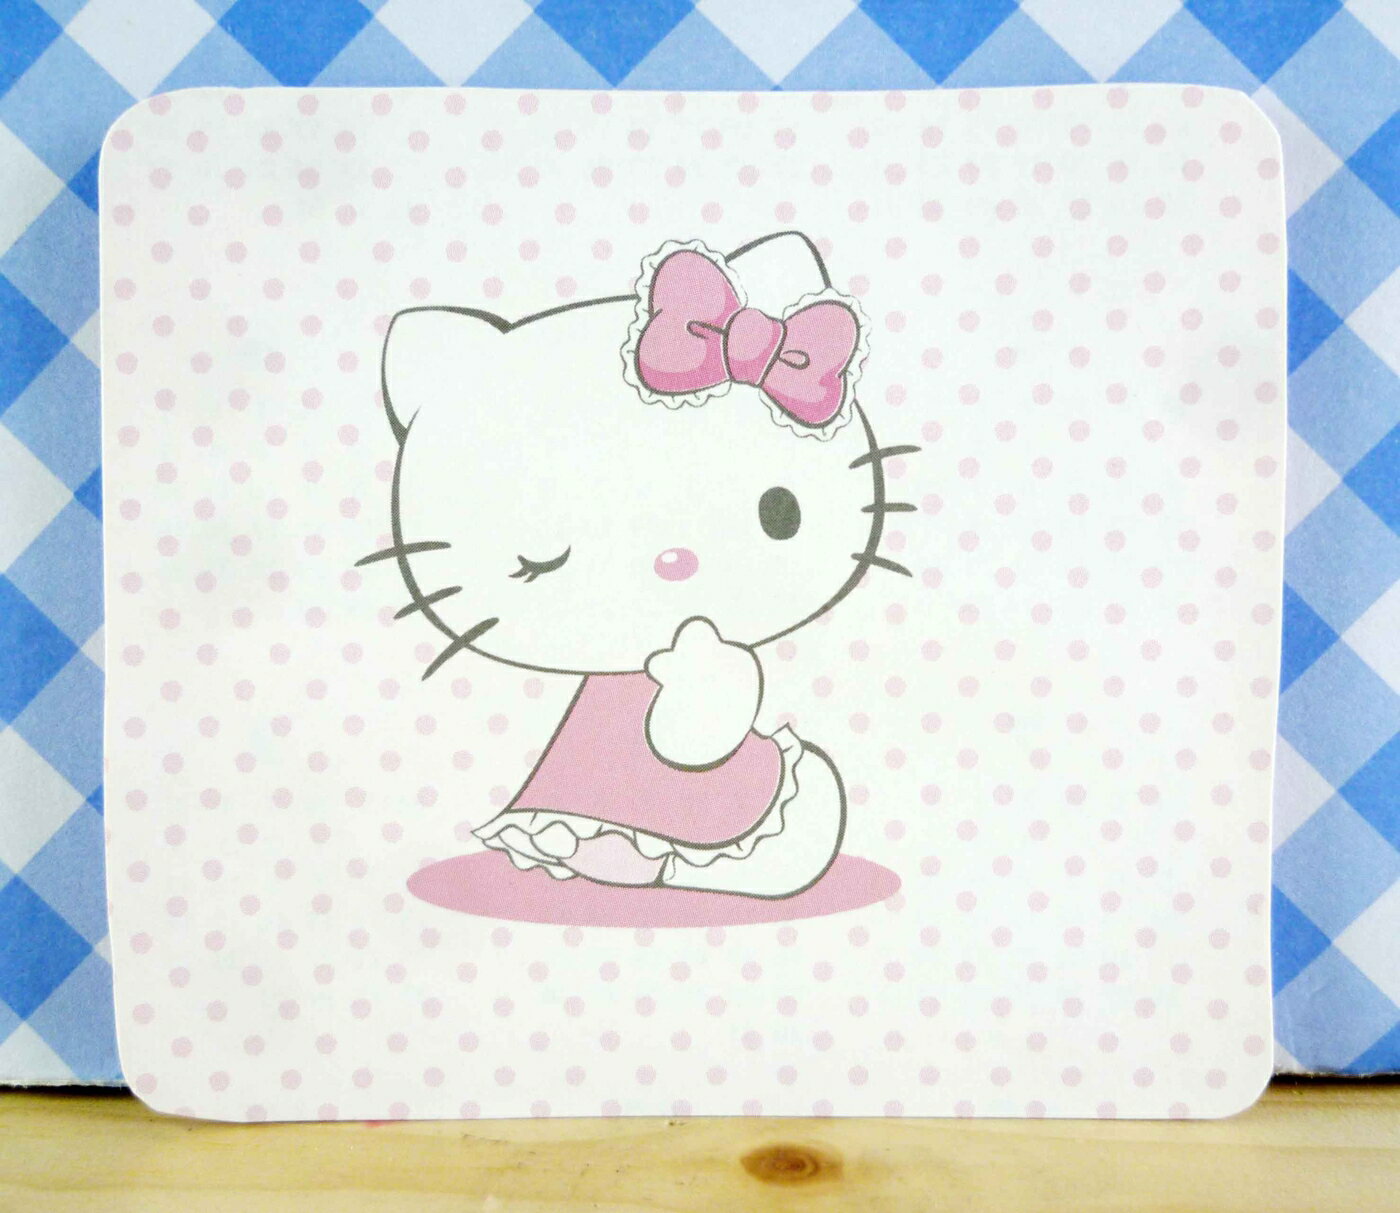 【震撼精品百貨】Hello Kitty 凱蒂貓 kitty小卡片 KITTY側坐 震撼日式精品百貨